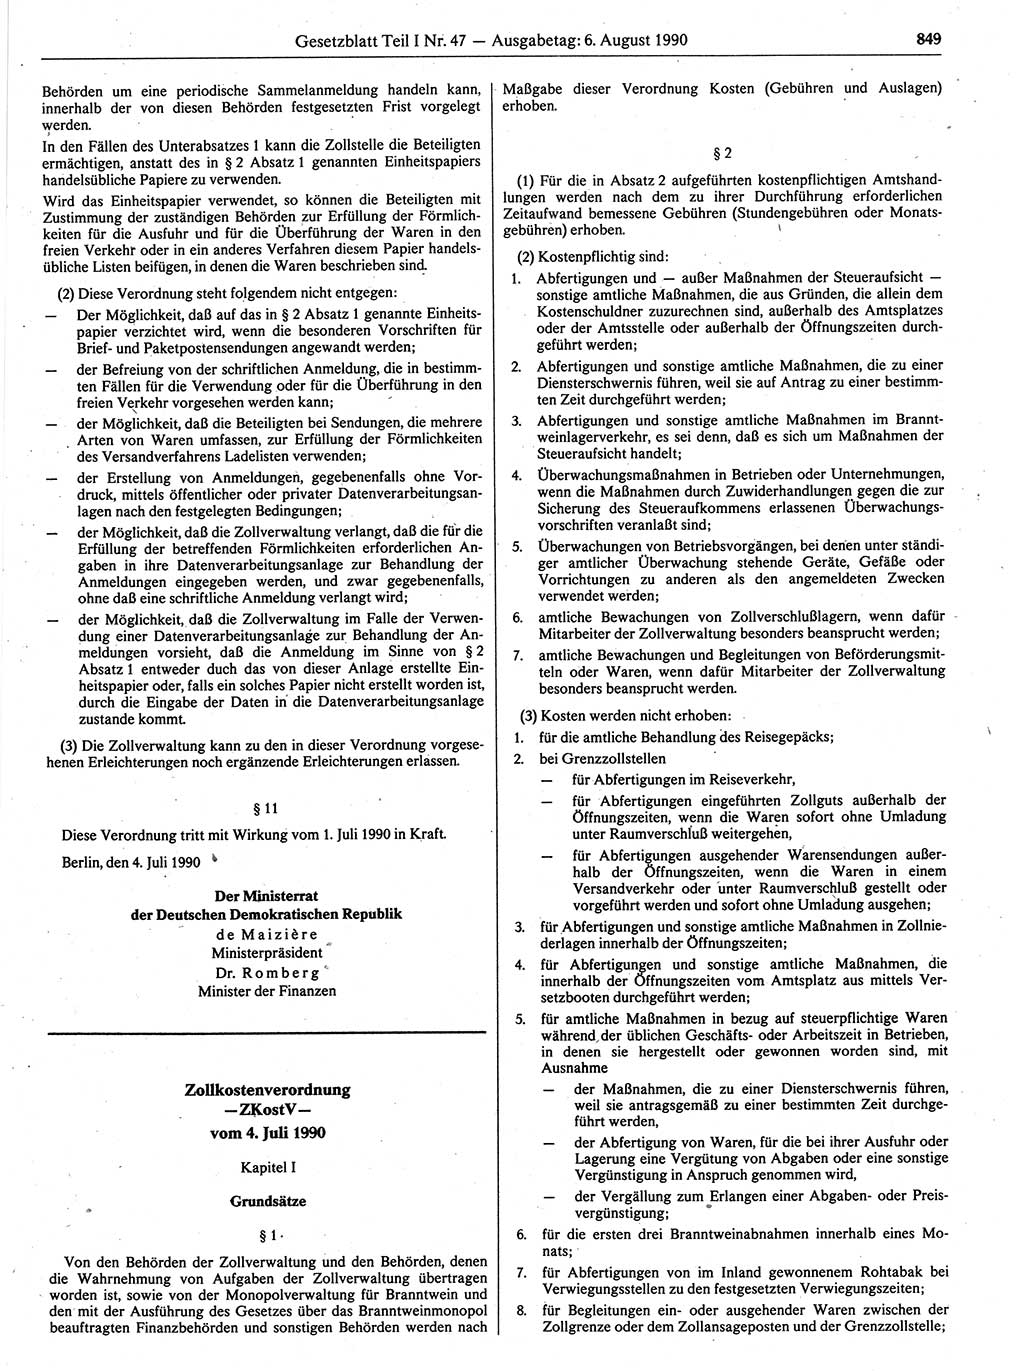 Gesetzblatt (GBl.) der Deutschen Demokratischen Republik (DDR) Teil Ⅰ 1990, Seite 849 (GBl. DDR Ⅰ 1990, S. 849)